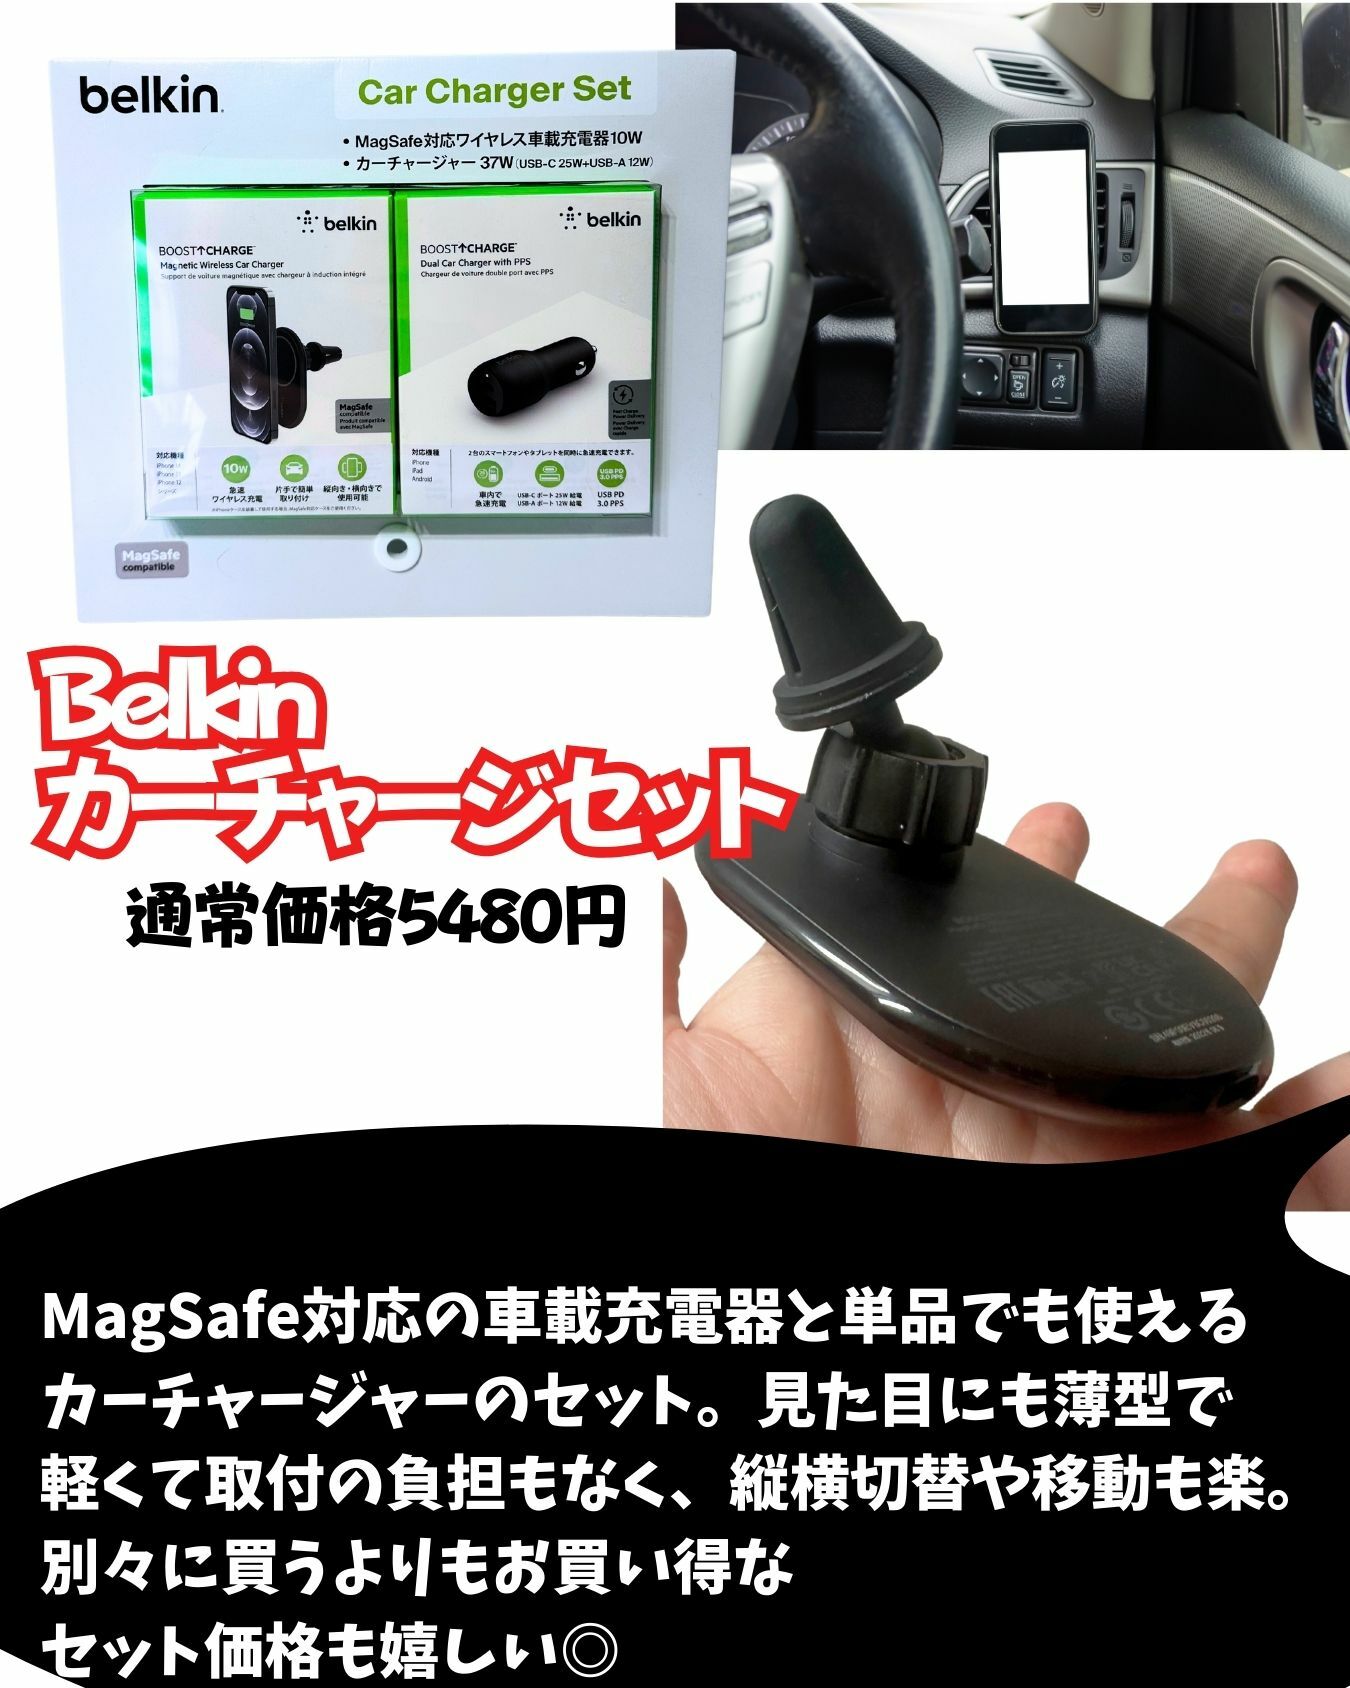 【コストコ】ベルキンの車載用カーチャージセットが便利